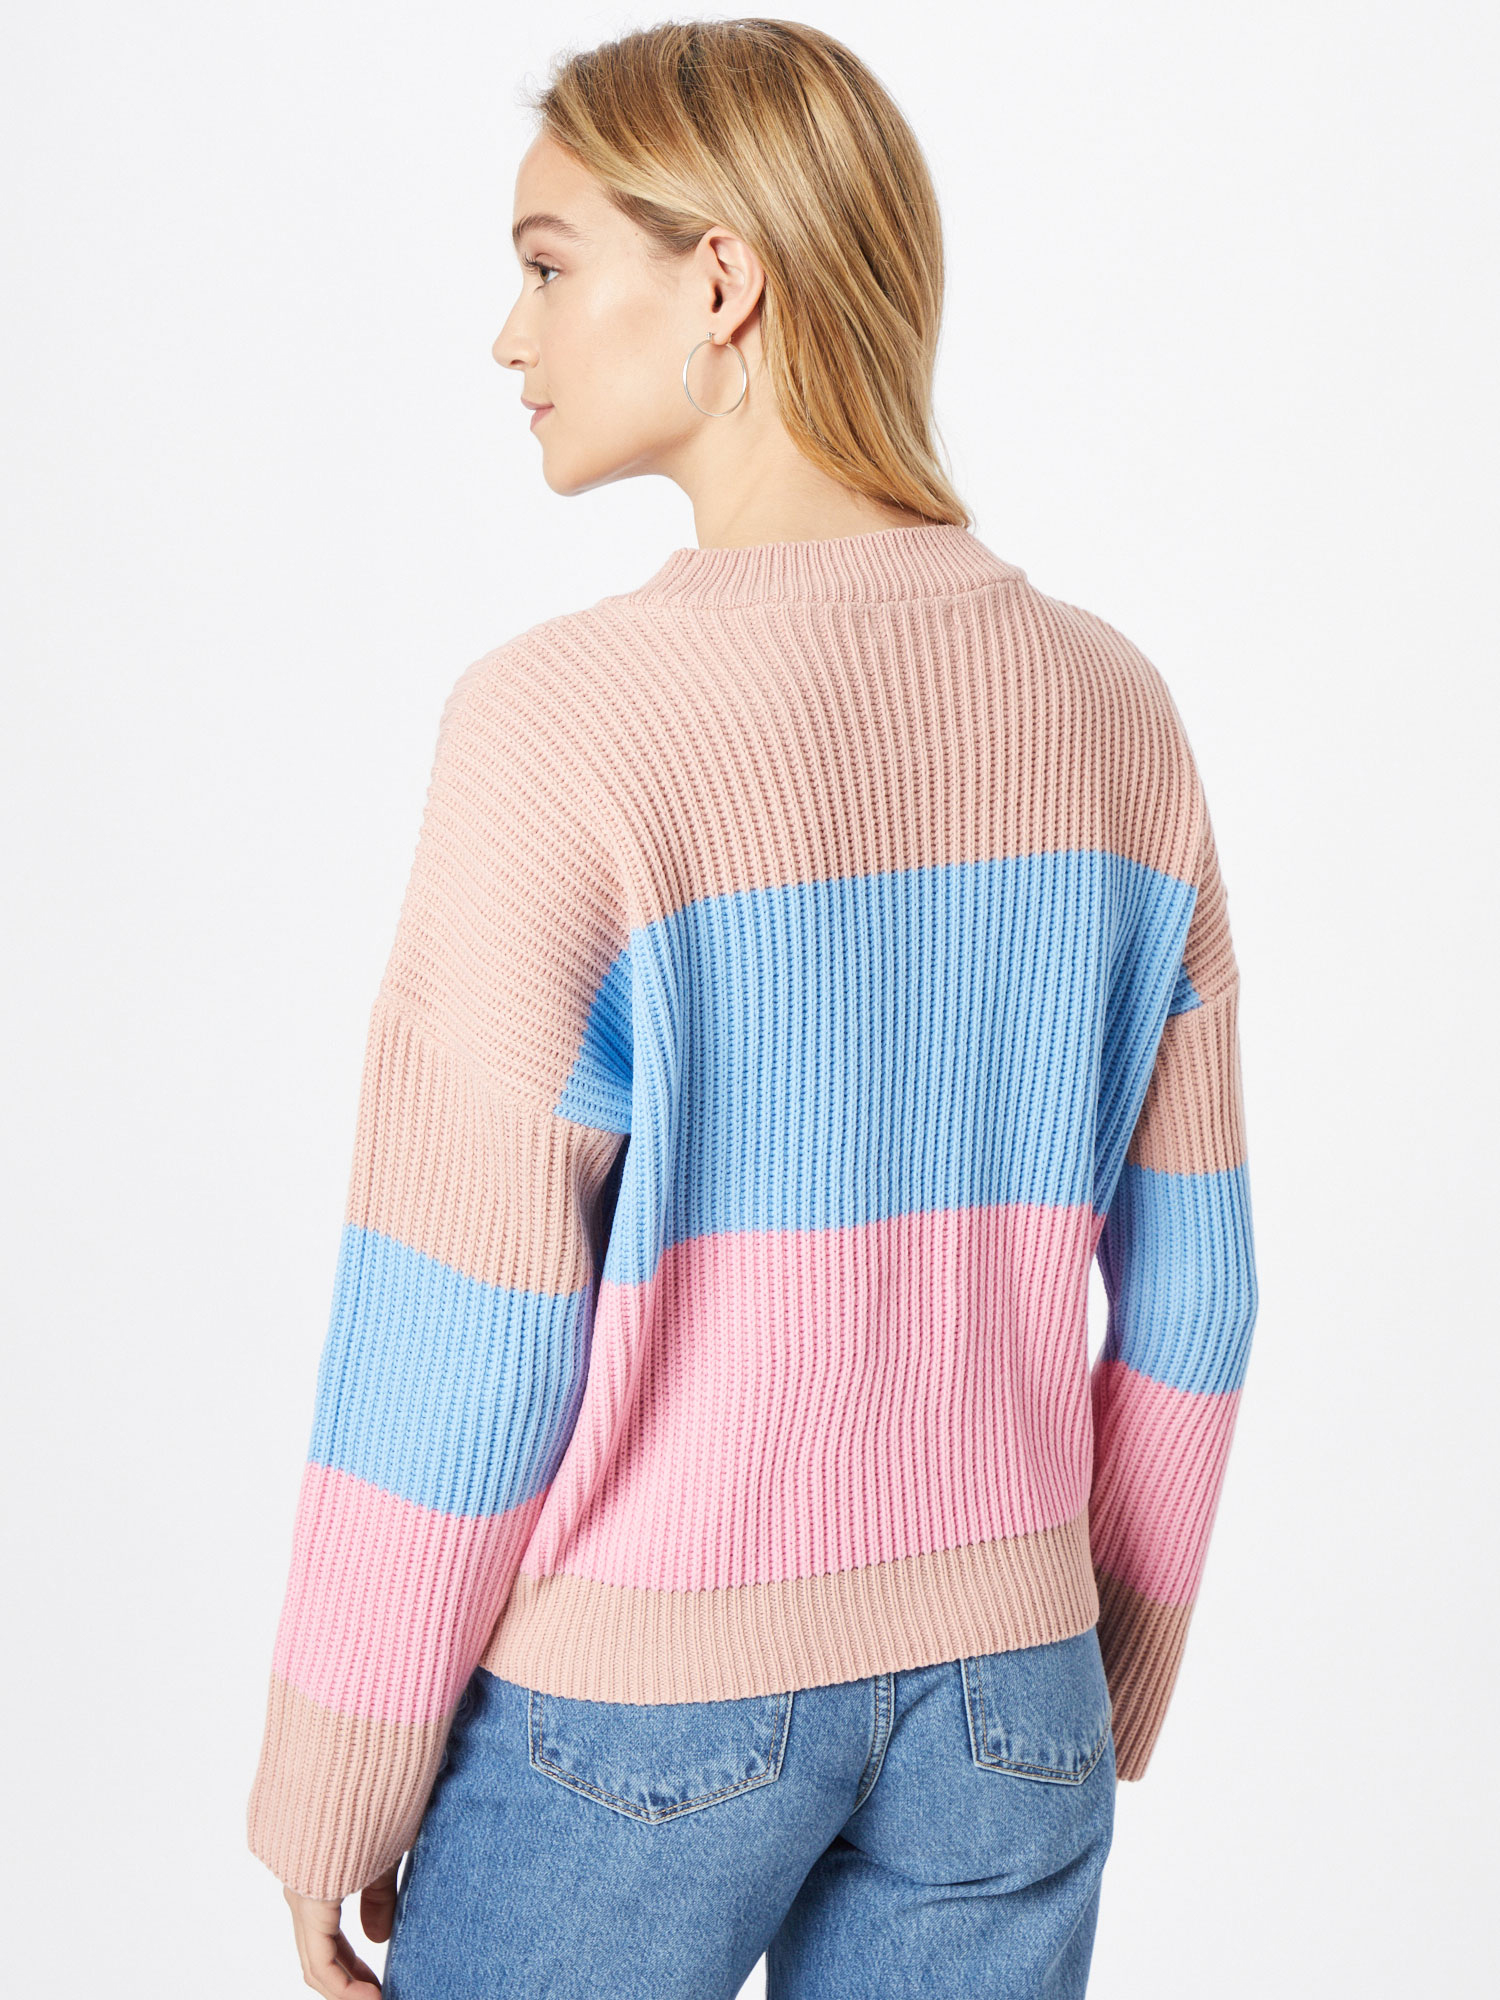 Swetry & dzianina Odzież In The Style Sweter OLIVIA BOWEN w kolorze Jasnoniebieski, Różowy Pudrowy, Jasnoróżowym 